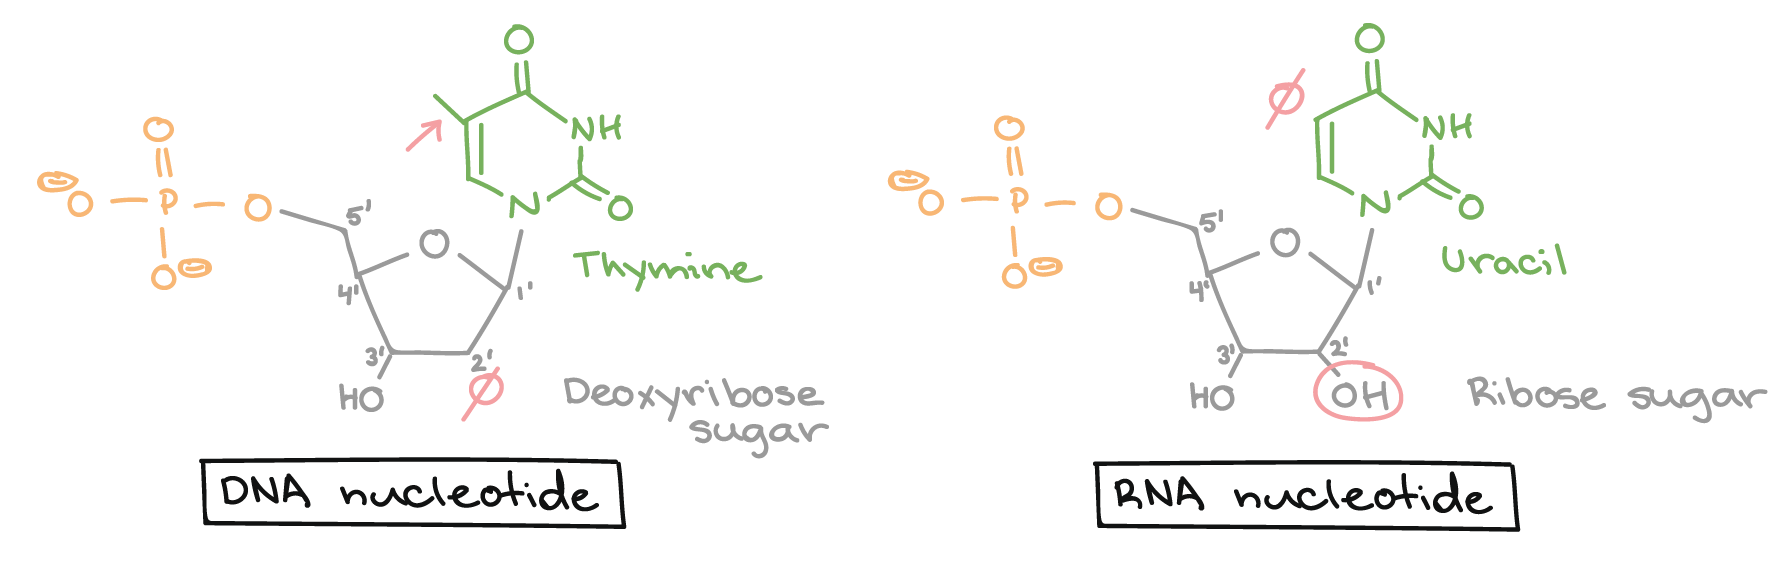 Nucleotídeo de DNA: não possui um grupo hidroxila no carbono 2' do açúcar (ou seja, o açúcar é a desoxirribose). Possui uma base timina que tem um grupo metila ligado a seu anel.

Nucleotídeo de RNA: possui um grupo hidroxila no carbono 2' do açúcar (ou seja, o açúcar é a ribose). Possui uma base uracila que é uma estrutura muito semelhante à timina, mas não tem um grupo metila ligado ao anel.